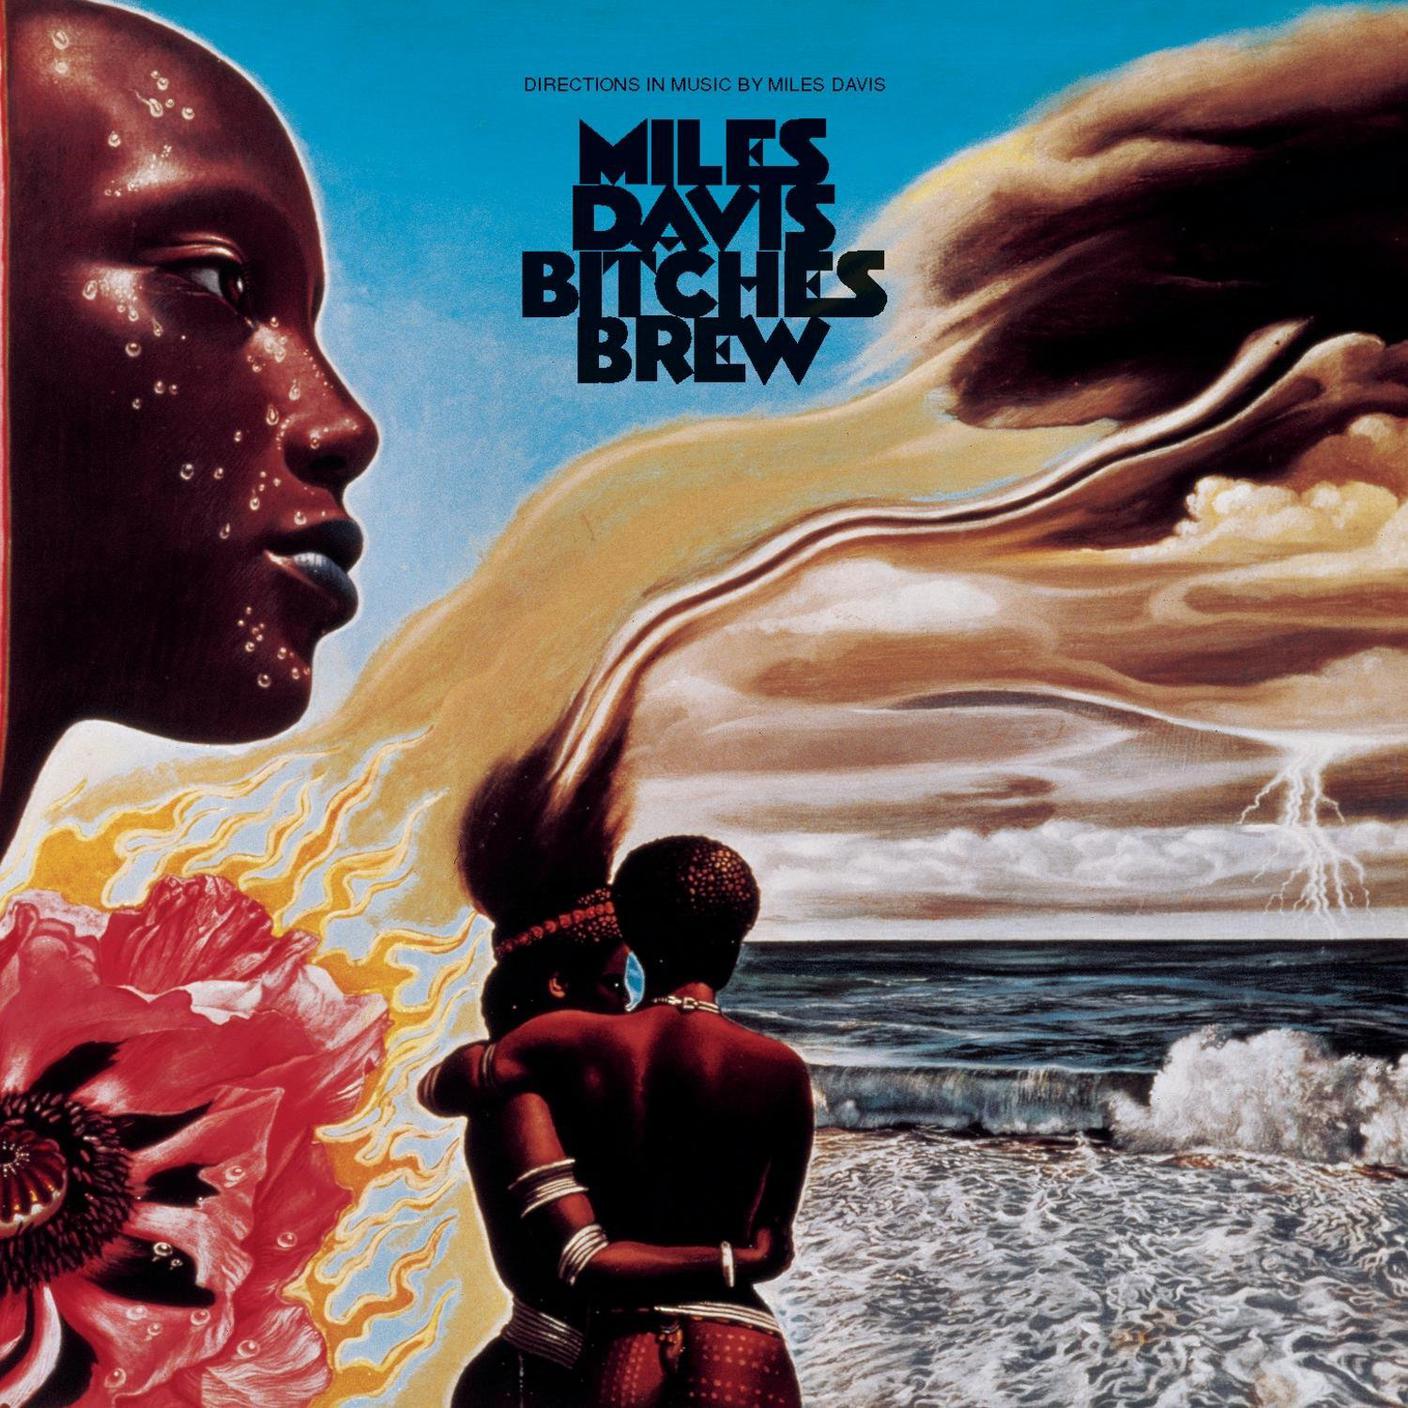 Miles Davis, "Bitches Brew", Columbia Records (dettaglio copertina)